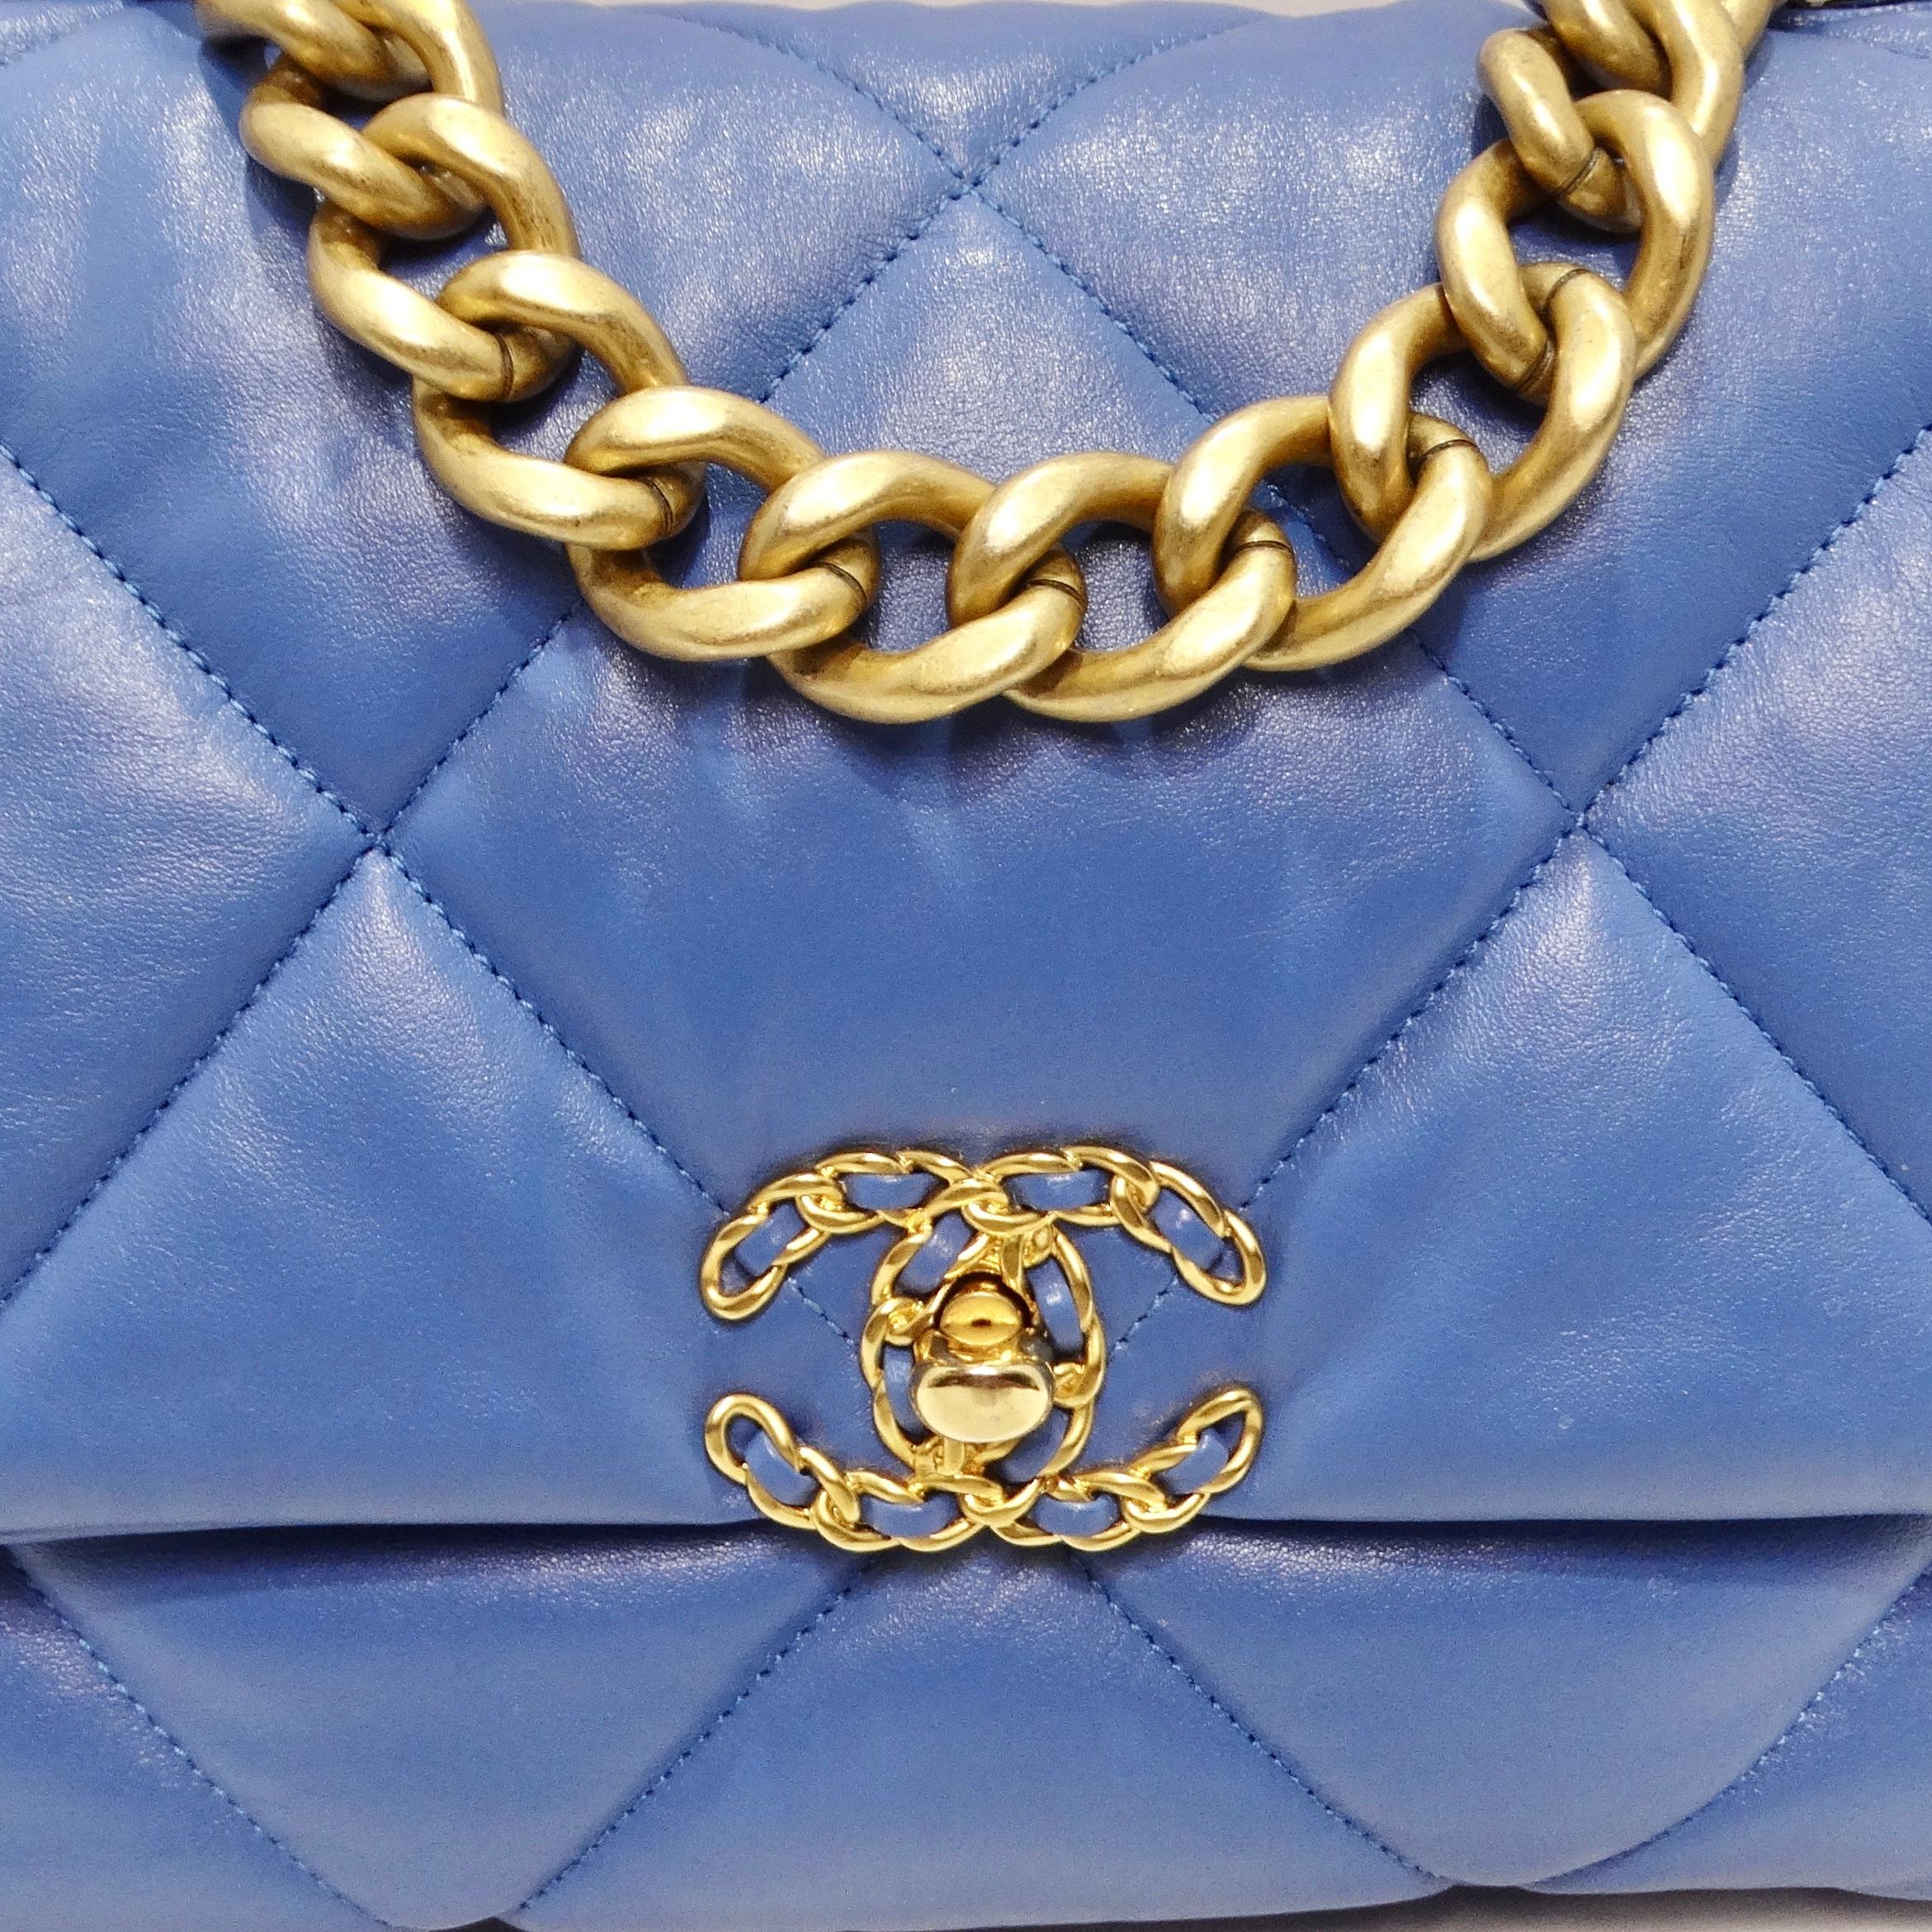 Erhöhen Sie Ihren Stil mit der Chanel Lambskin Quilted Medium 19 Flap Bag in Blau, einem authentischen Meisterwerk, das Chanels charakteristisches gestepptes Lammleder nahtlos mit stilvoller Gold- und Ruthenium-Hardware kombiniert. Diese Tasche ist